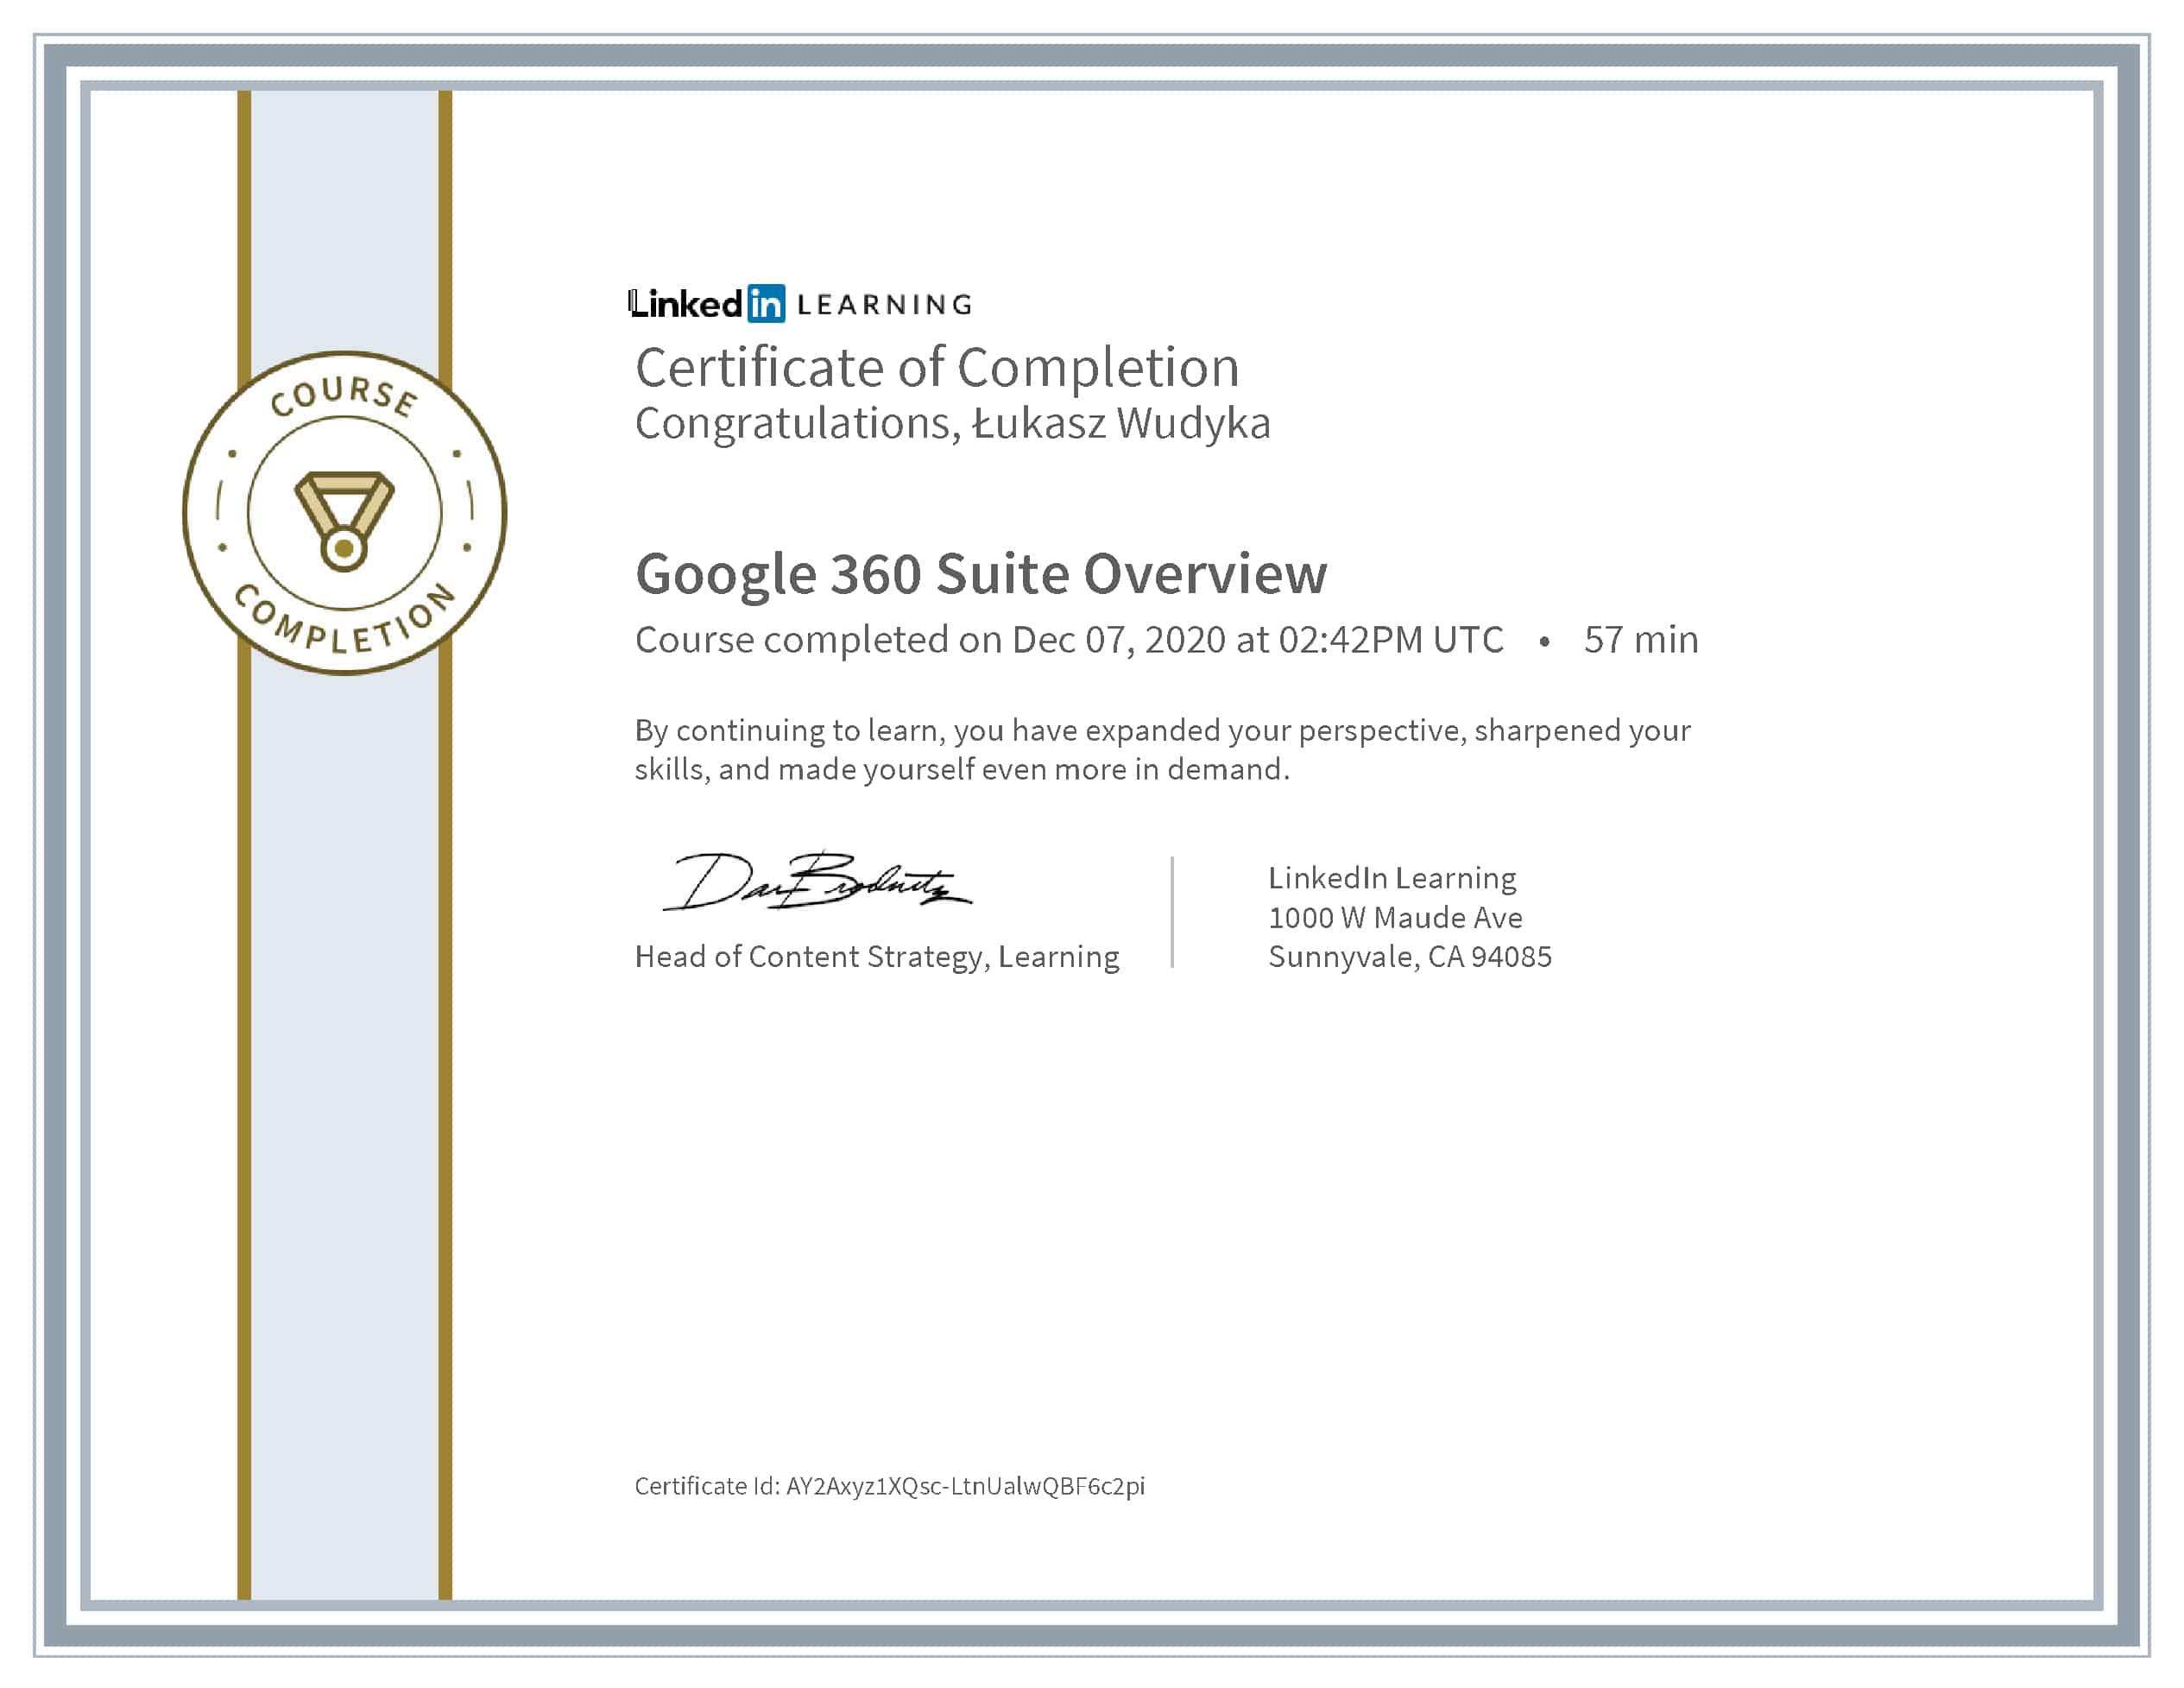 Łukasz Wudyka certyfikat LinkedIn Google 360 Suite Overview